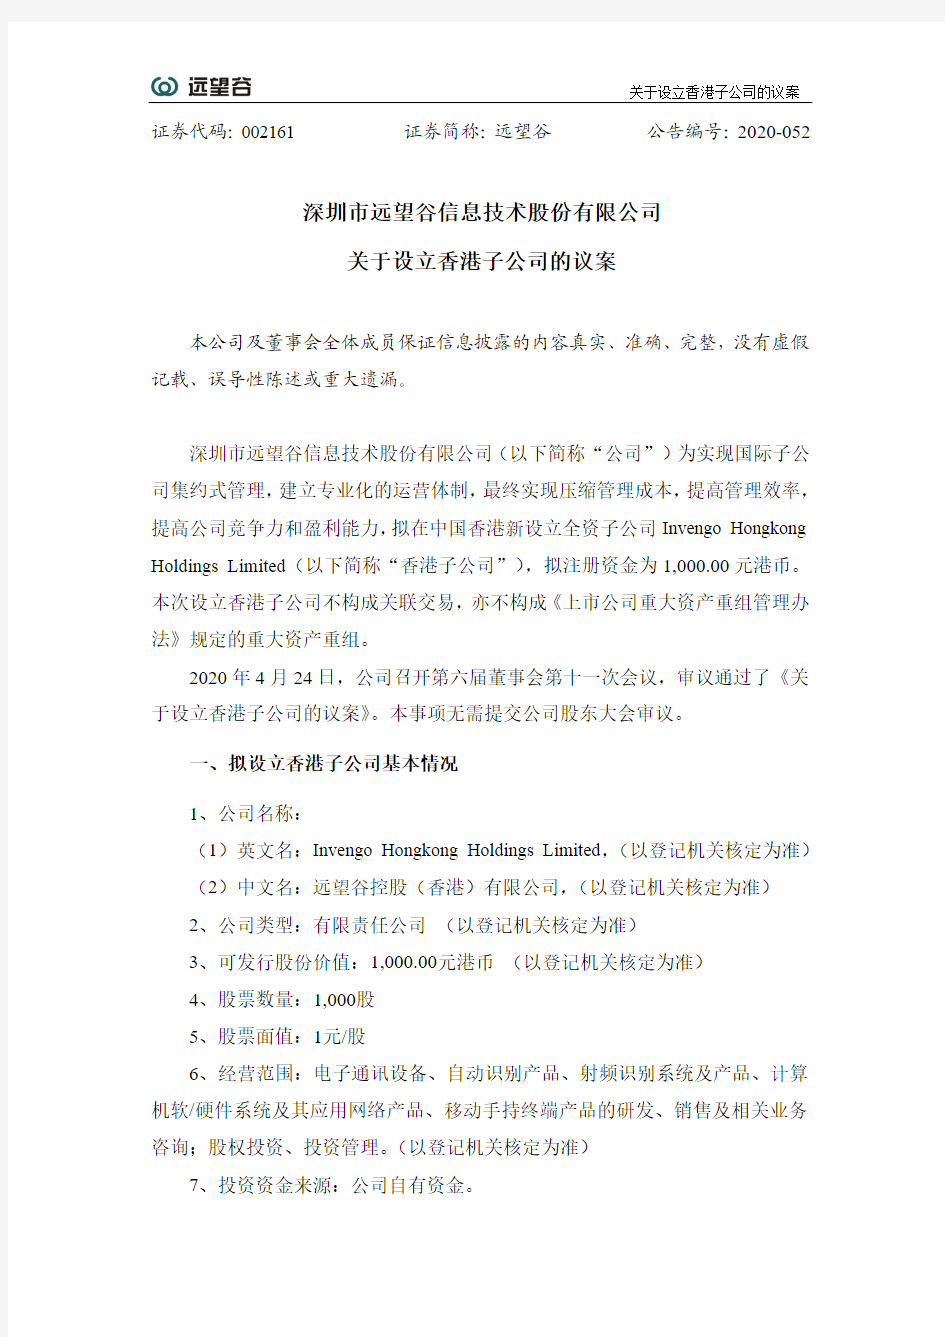 远望谷：关于设立香港子公司的议案